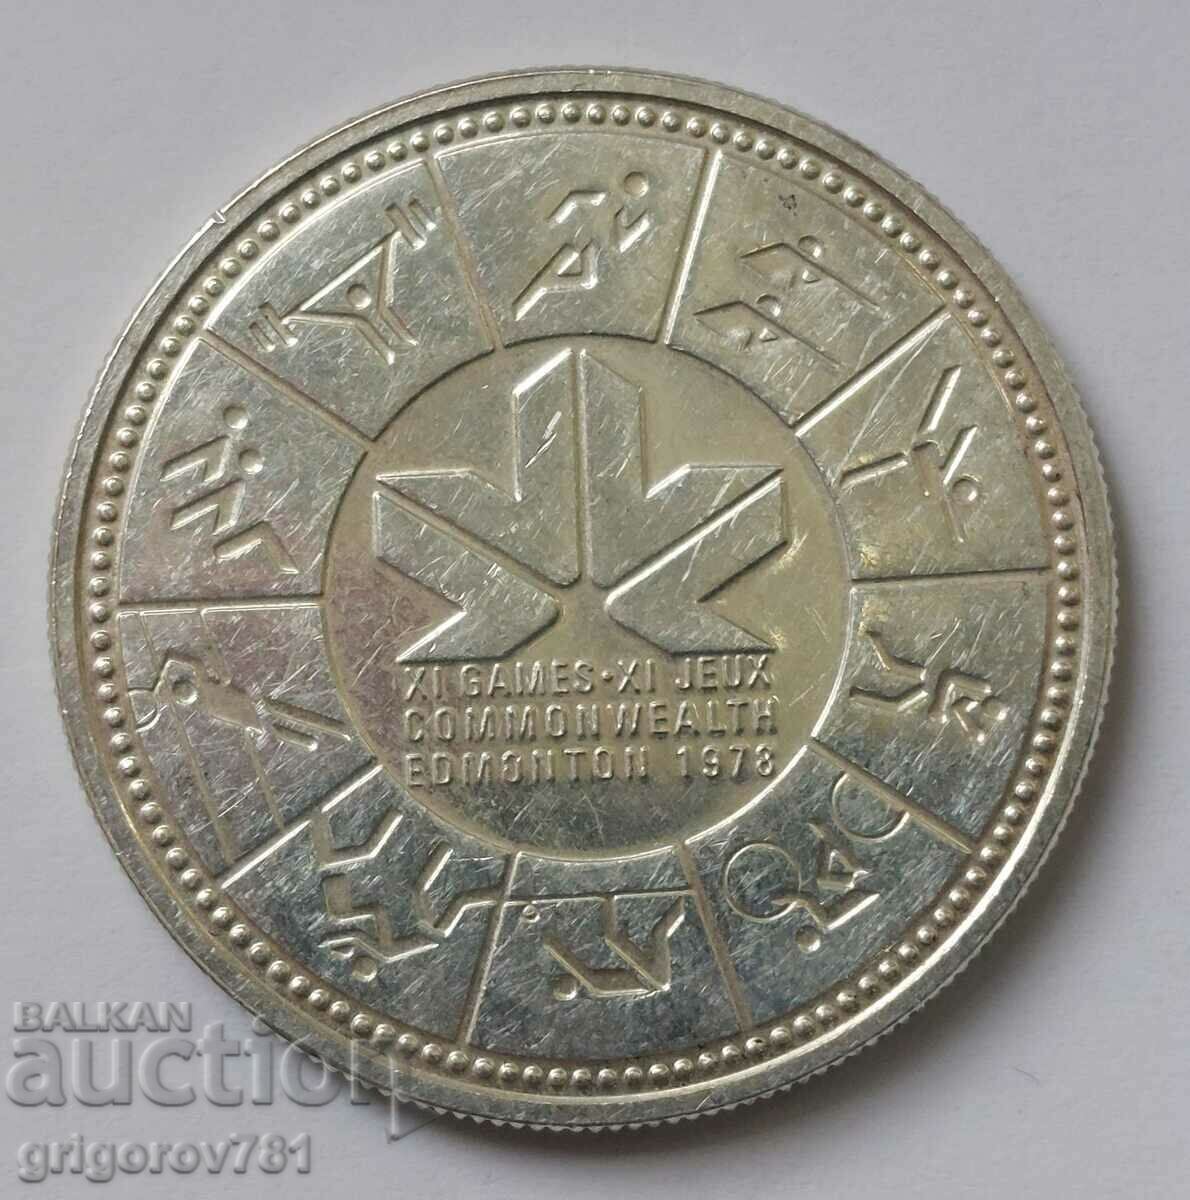 1 dollar silver Canada 1978 - silver coin